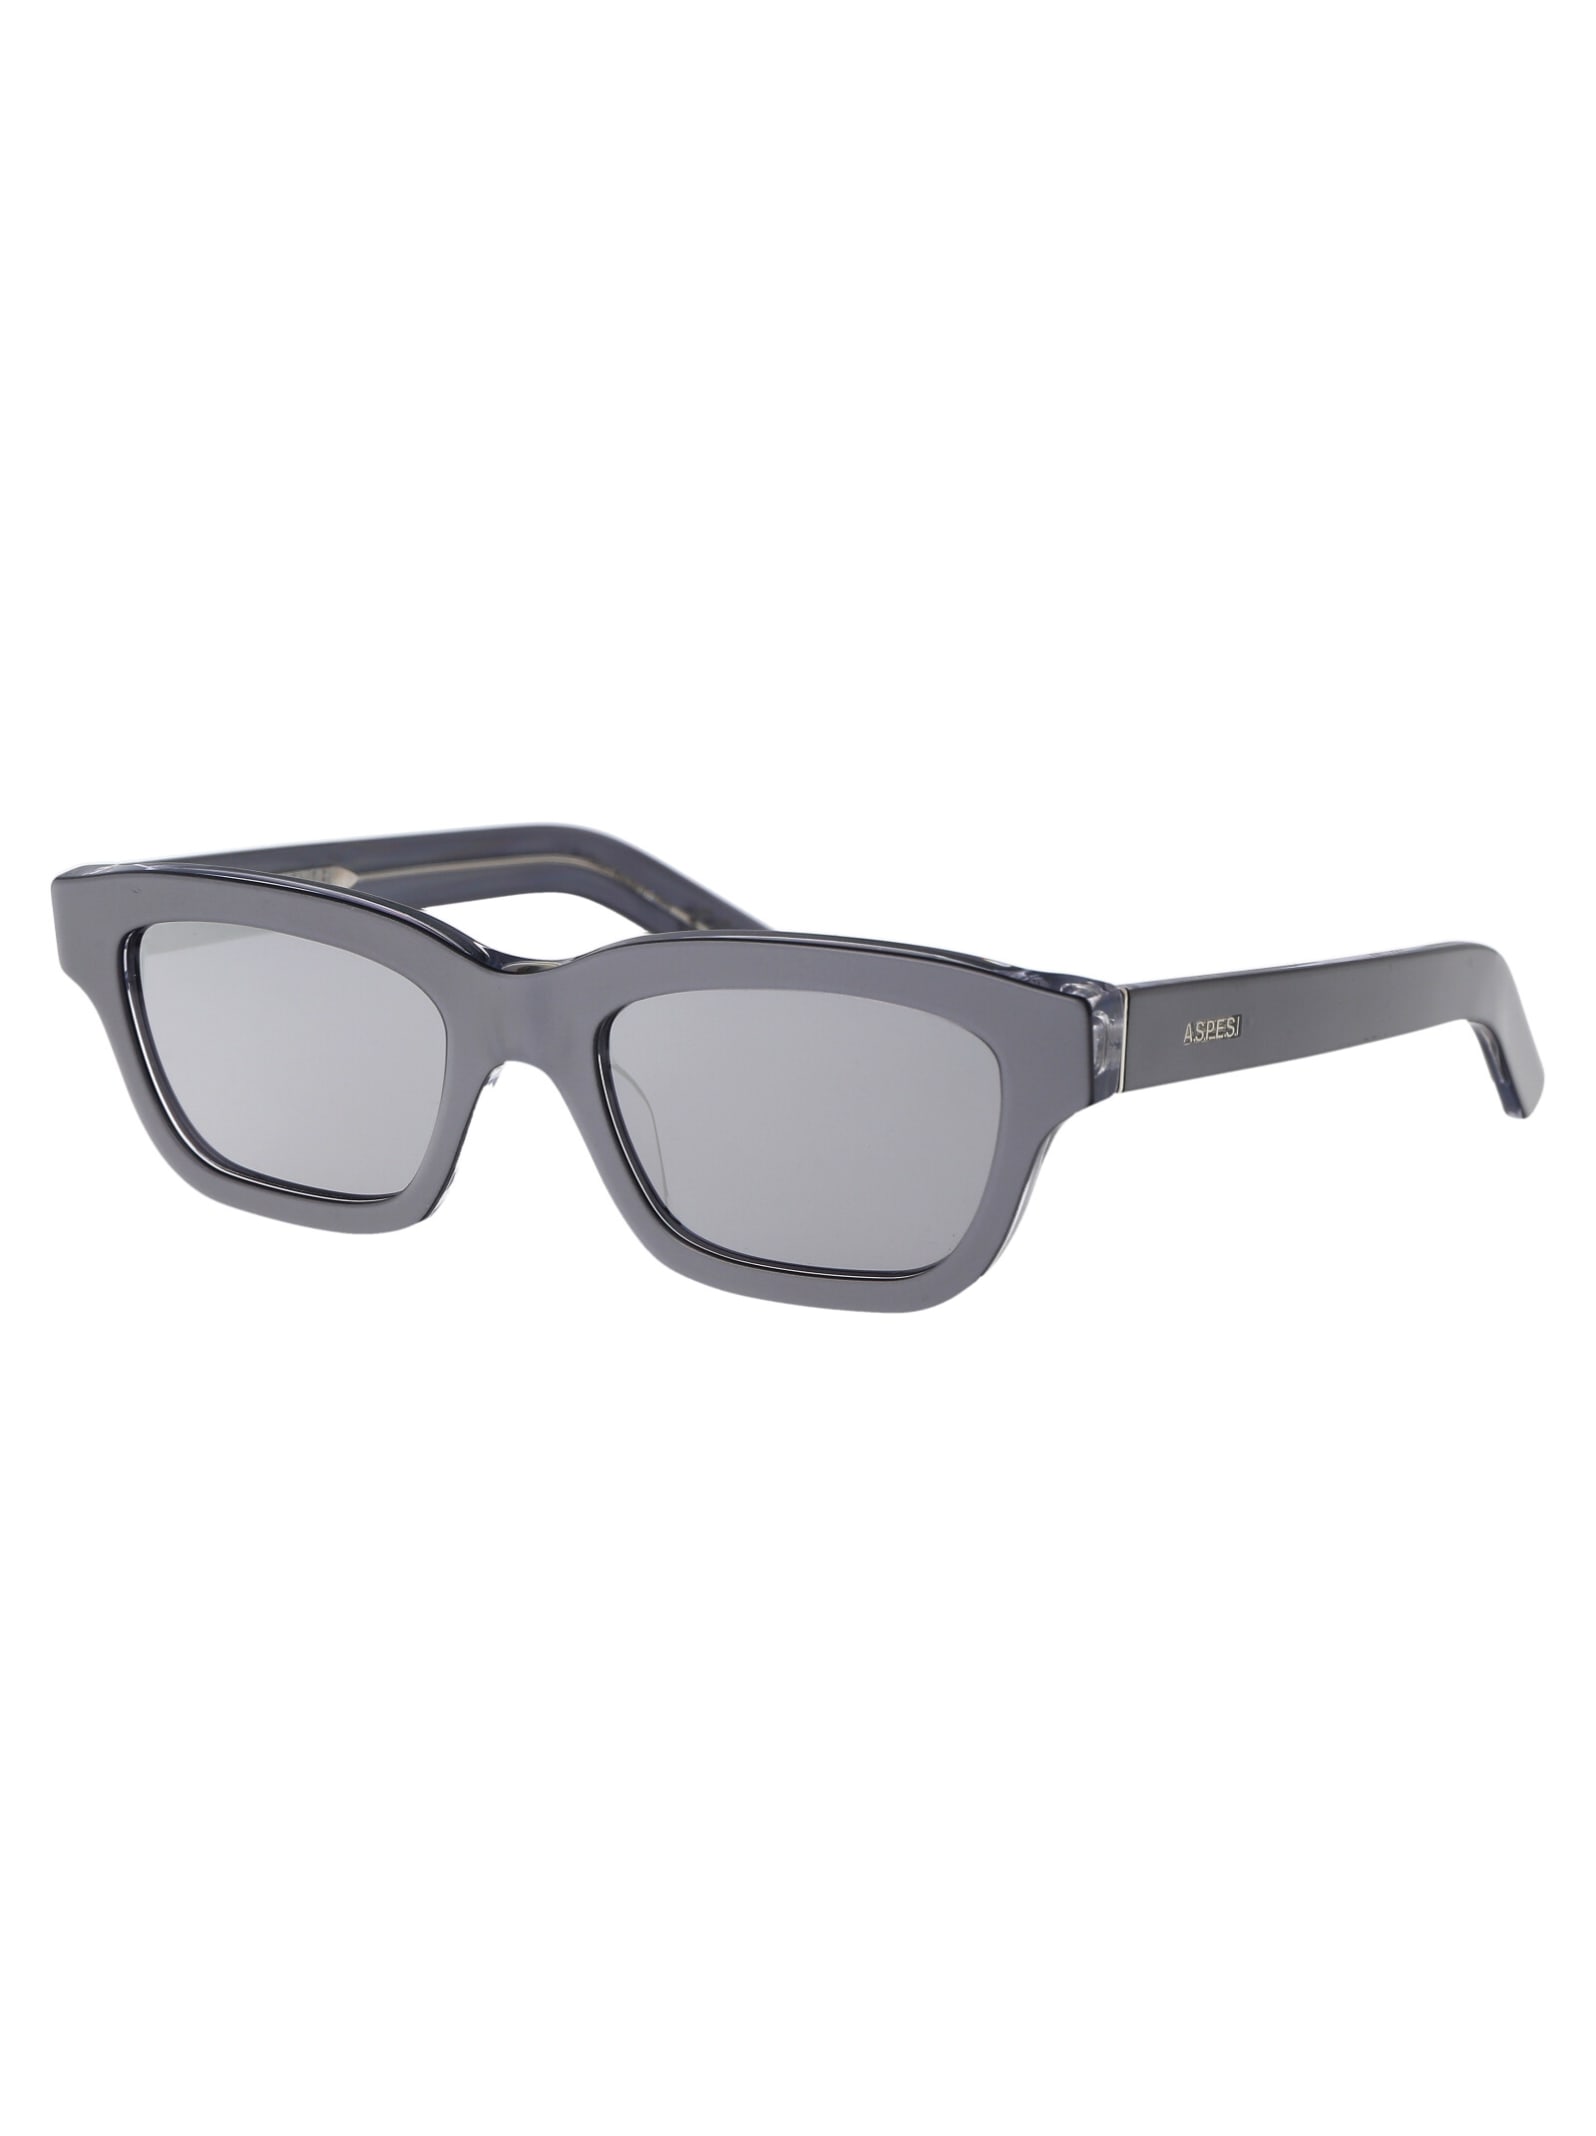 Shop Retrosuperfuture Milano Aspesi Sunglasses In Silver